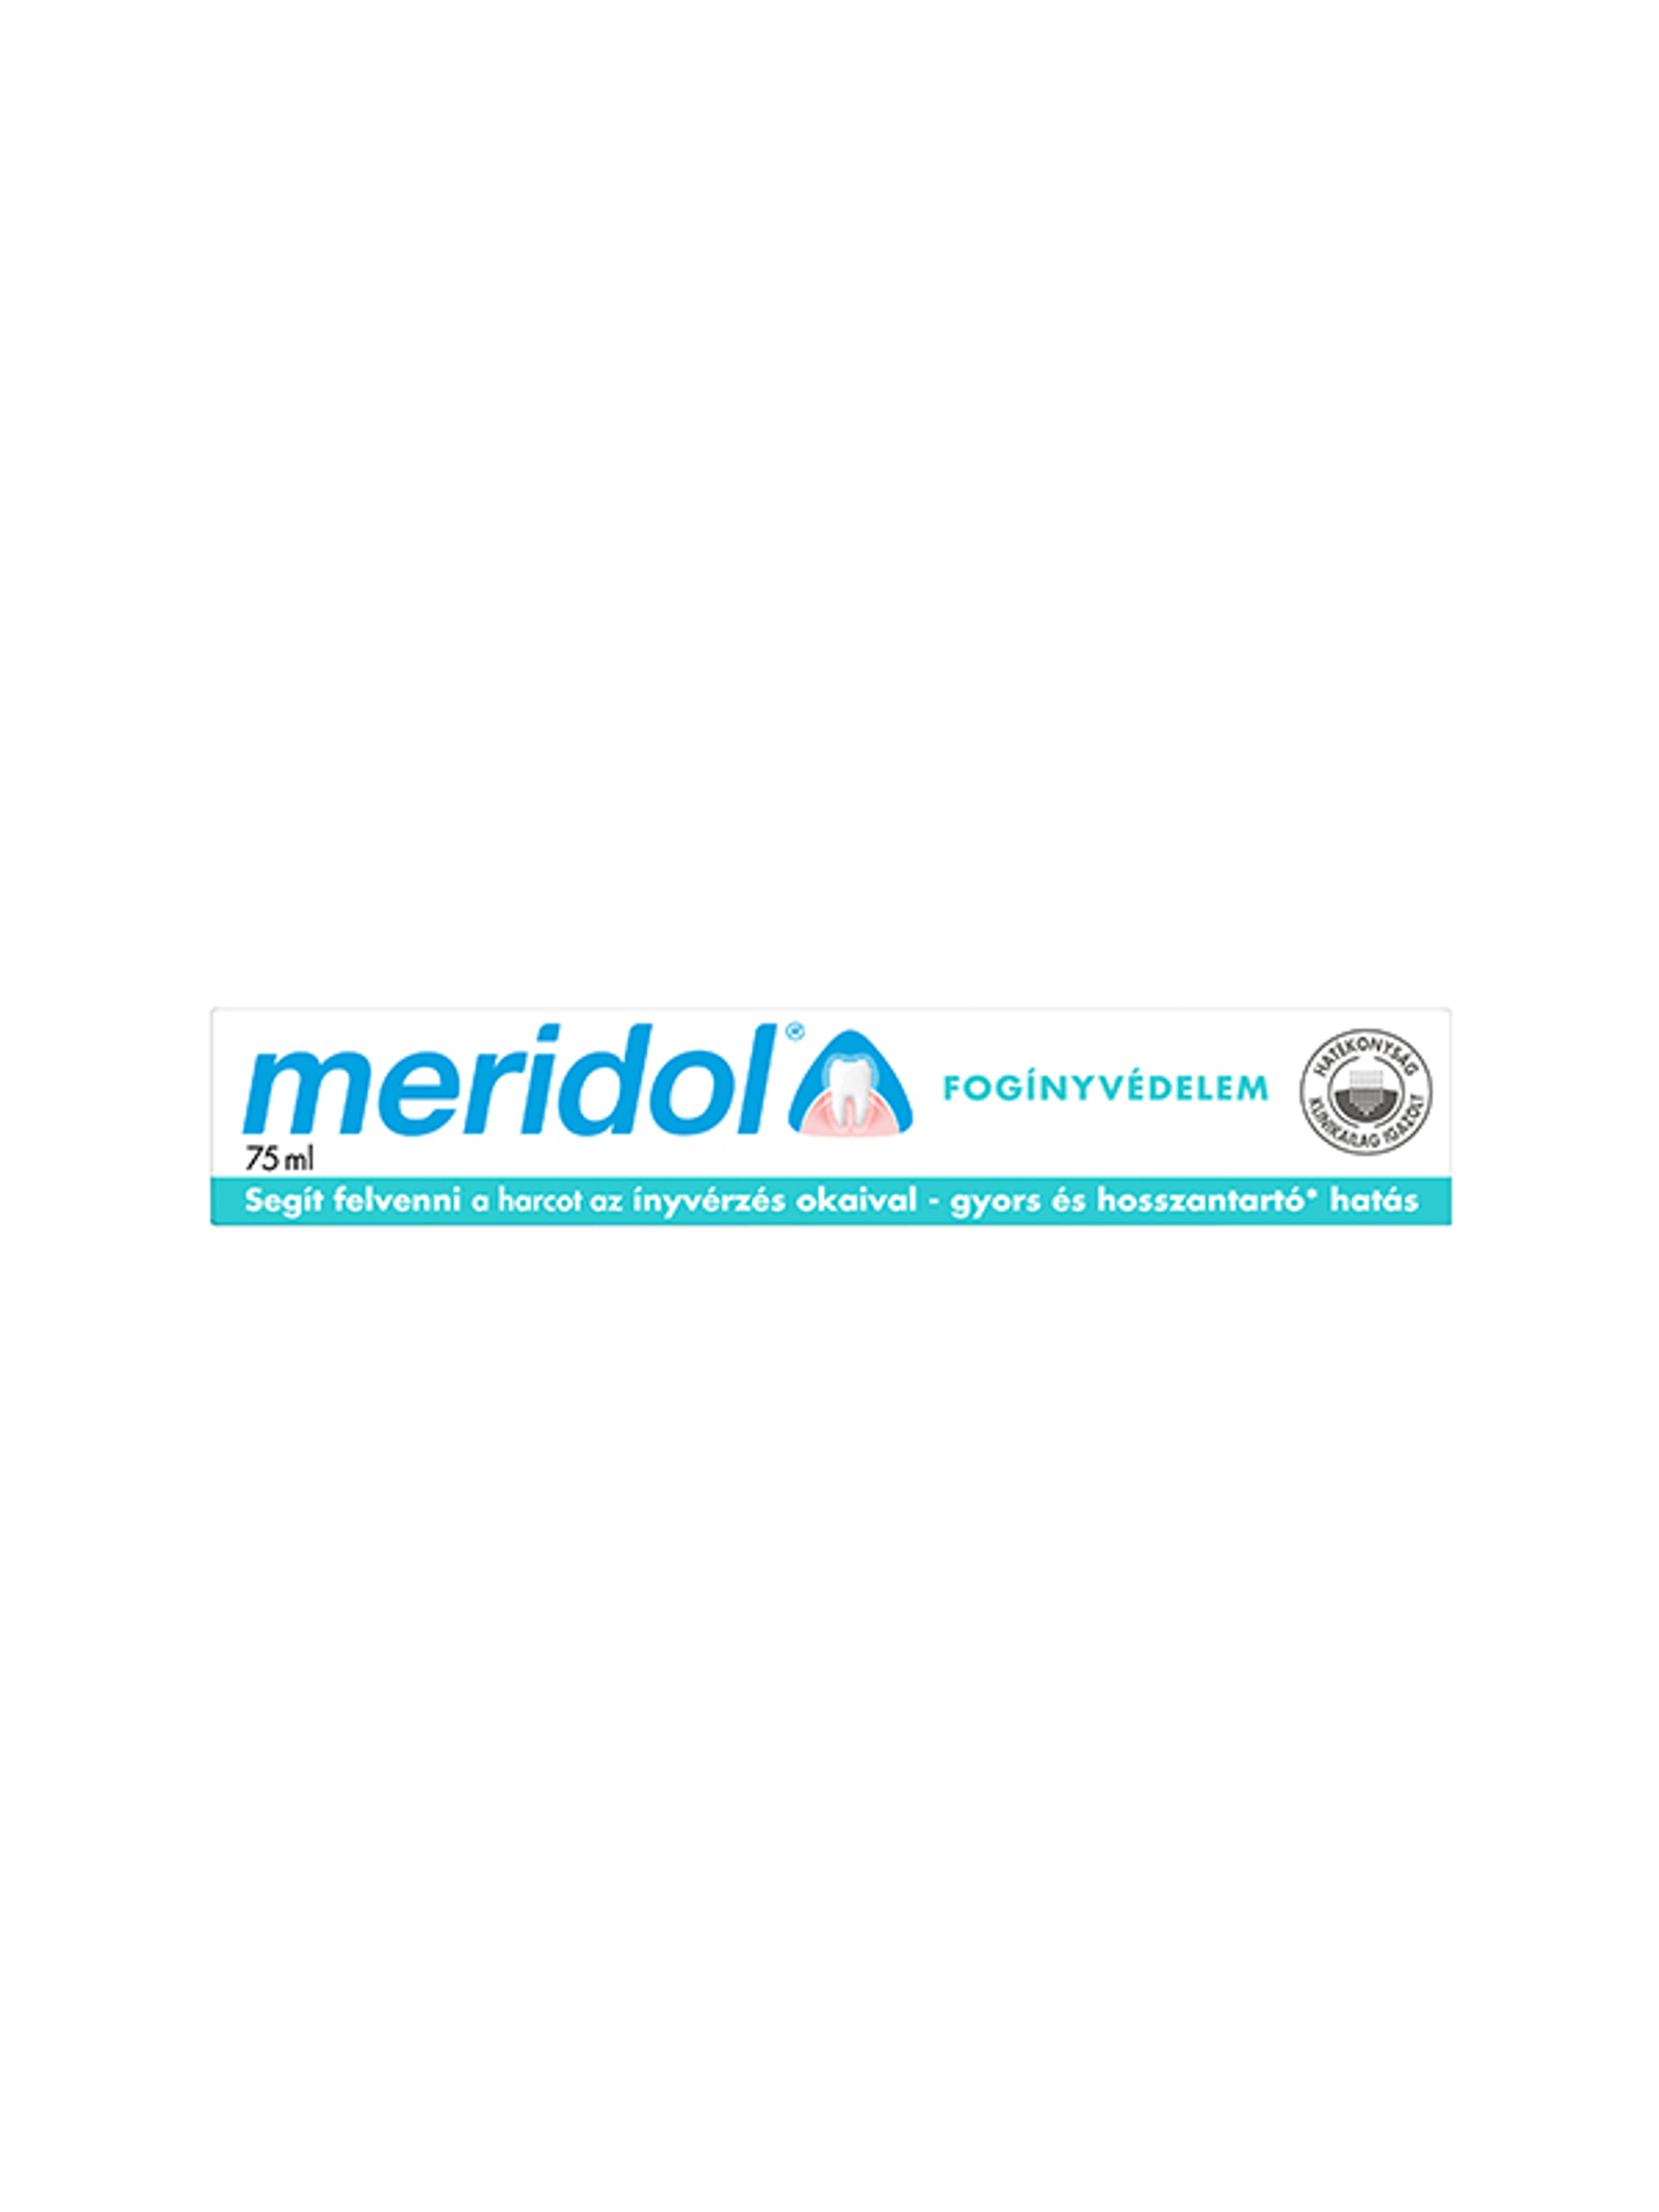 Meridol Fogínyvédelem fogkrém - 75 ml-10